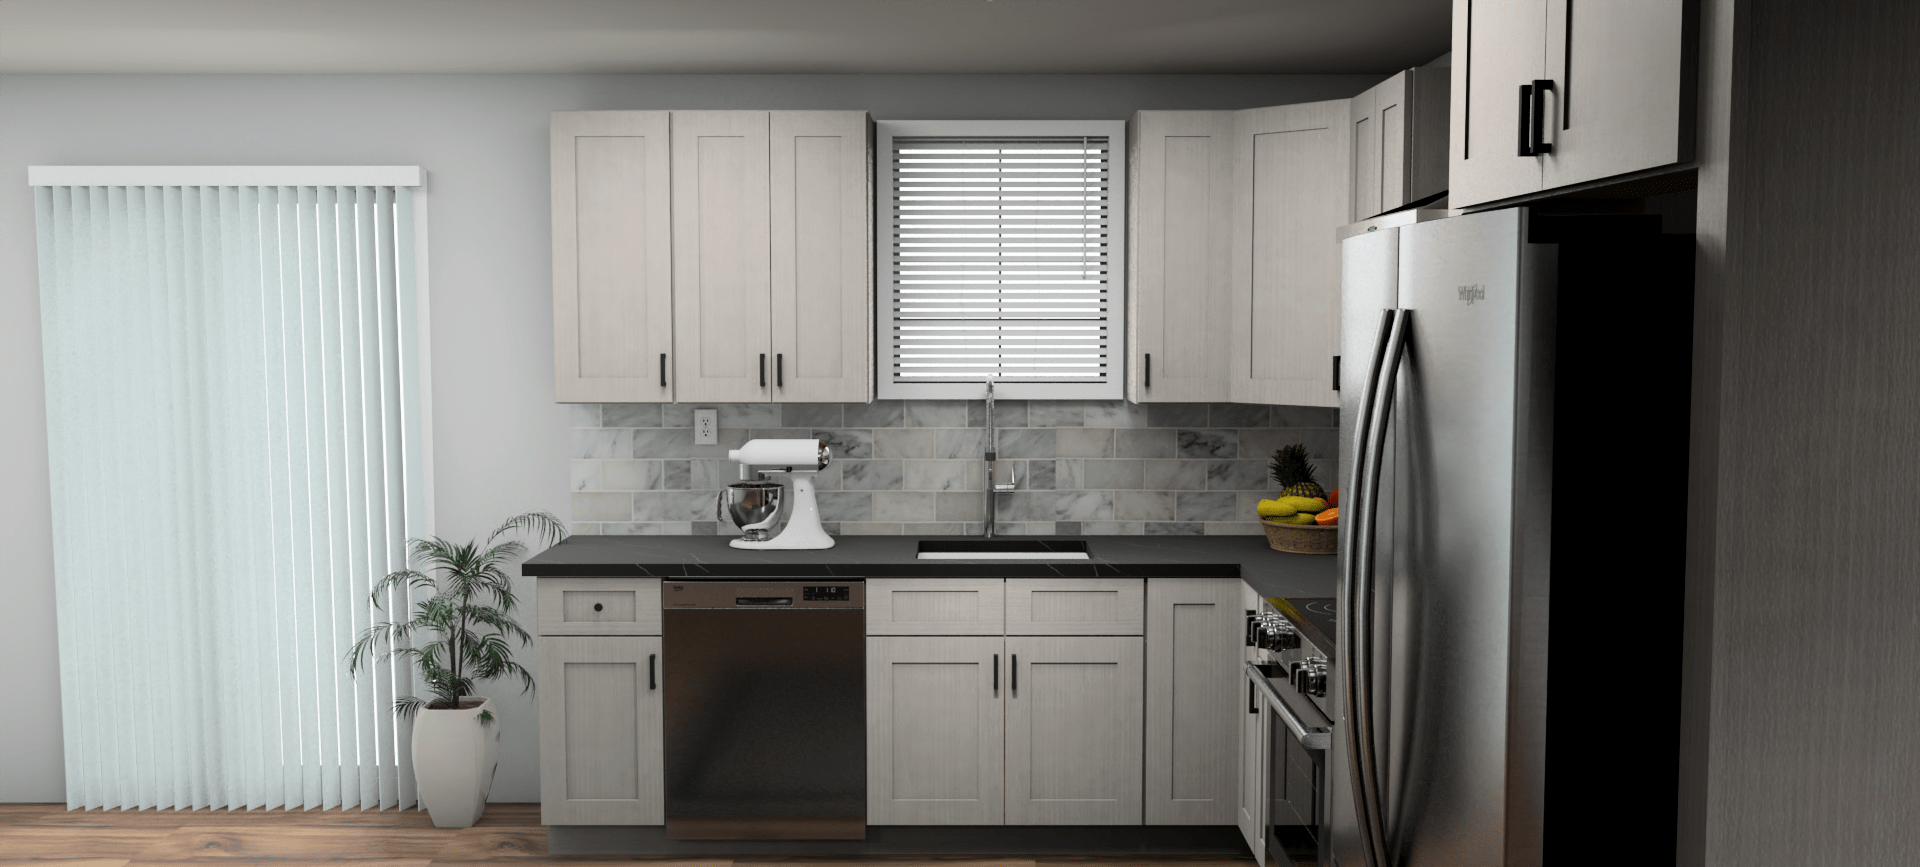 Fabuwood Allure Galaxy Horizon 9 x 12 L Shaped Kitchen Side Layout Photo